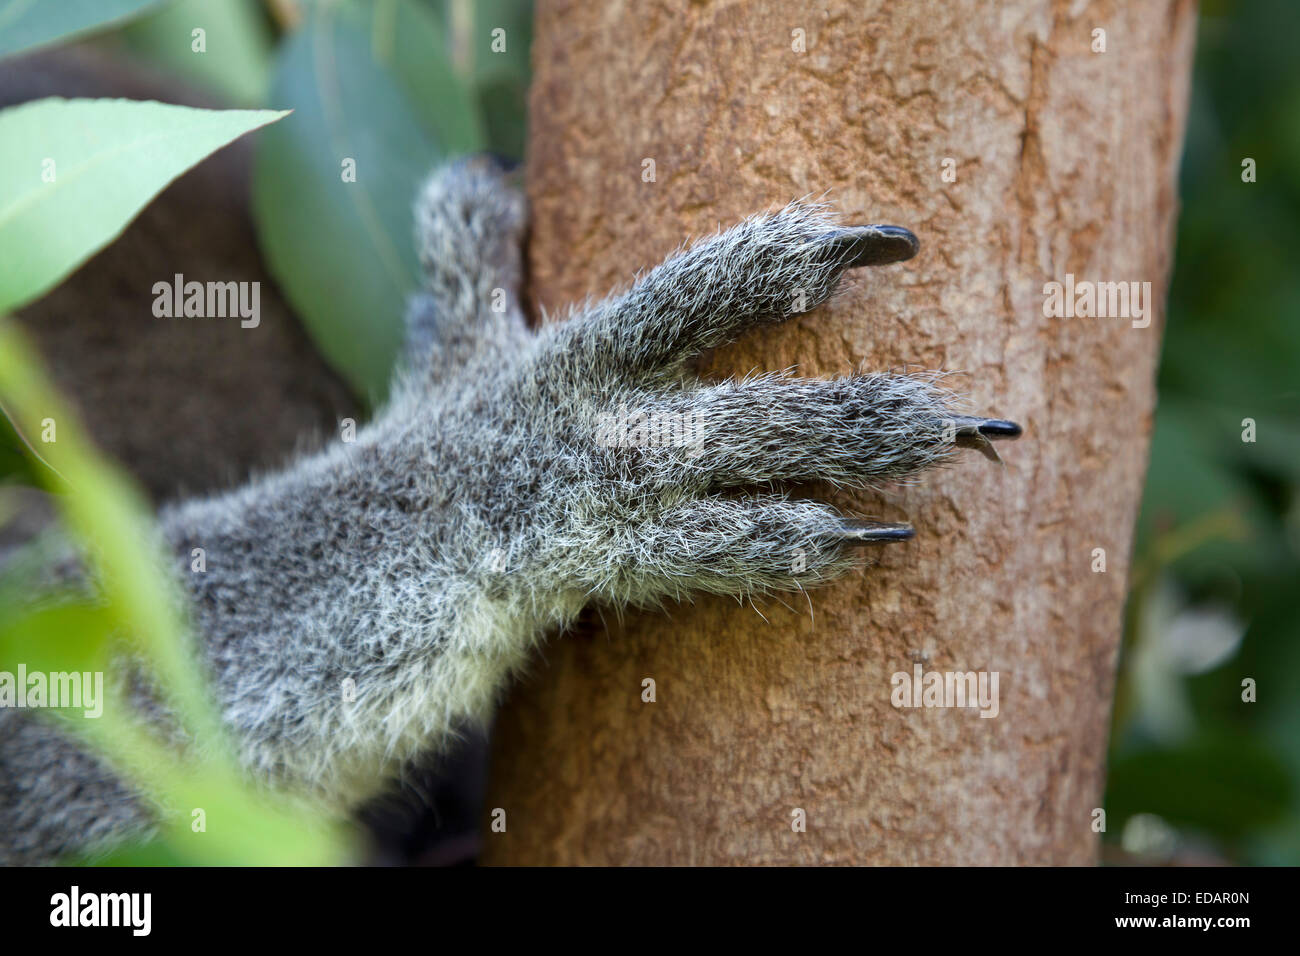 Pierna Koala aferrarse a un árbol Foto de stock